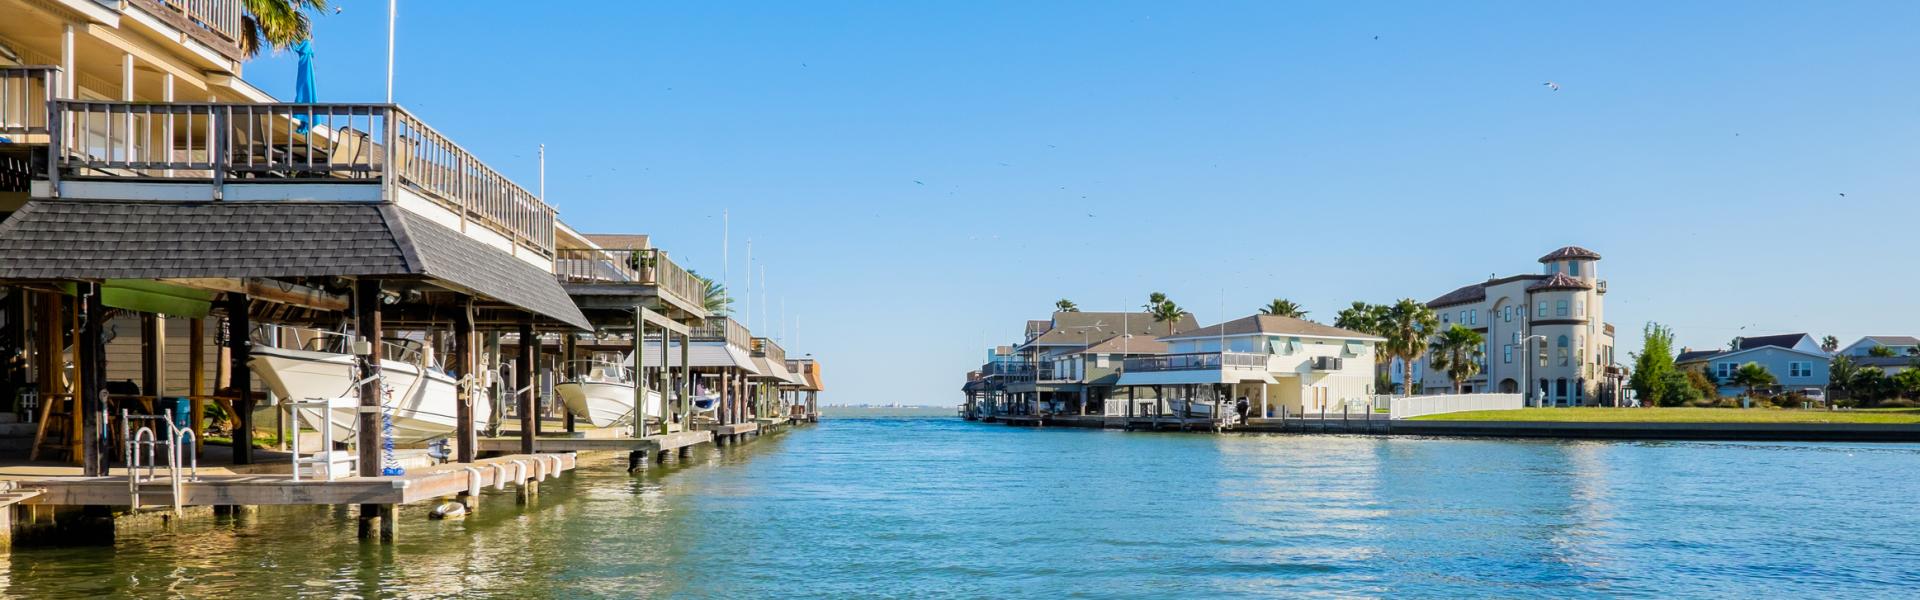 Galveston Vacation Rentals - Wimdu